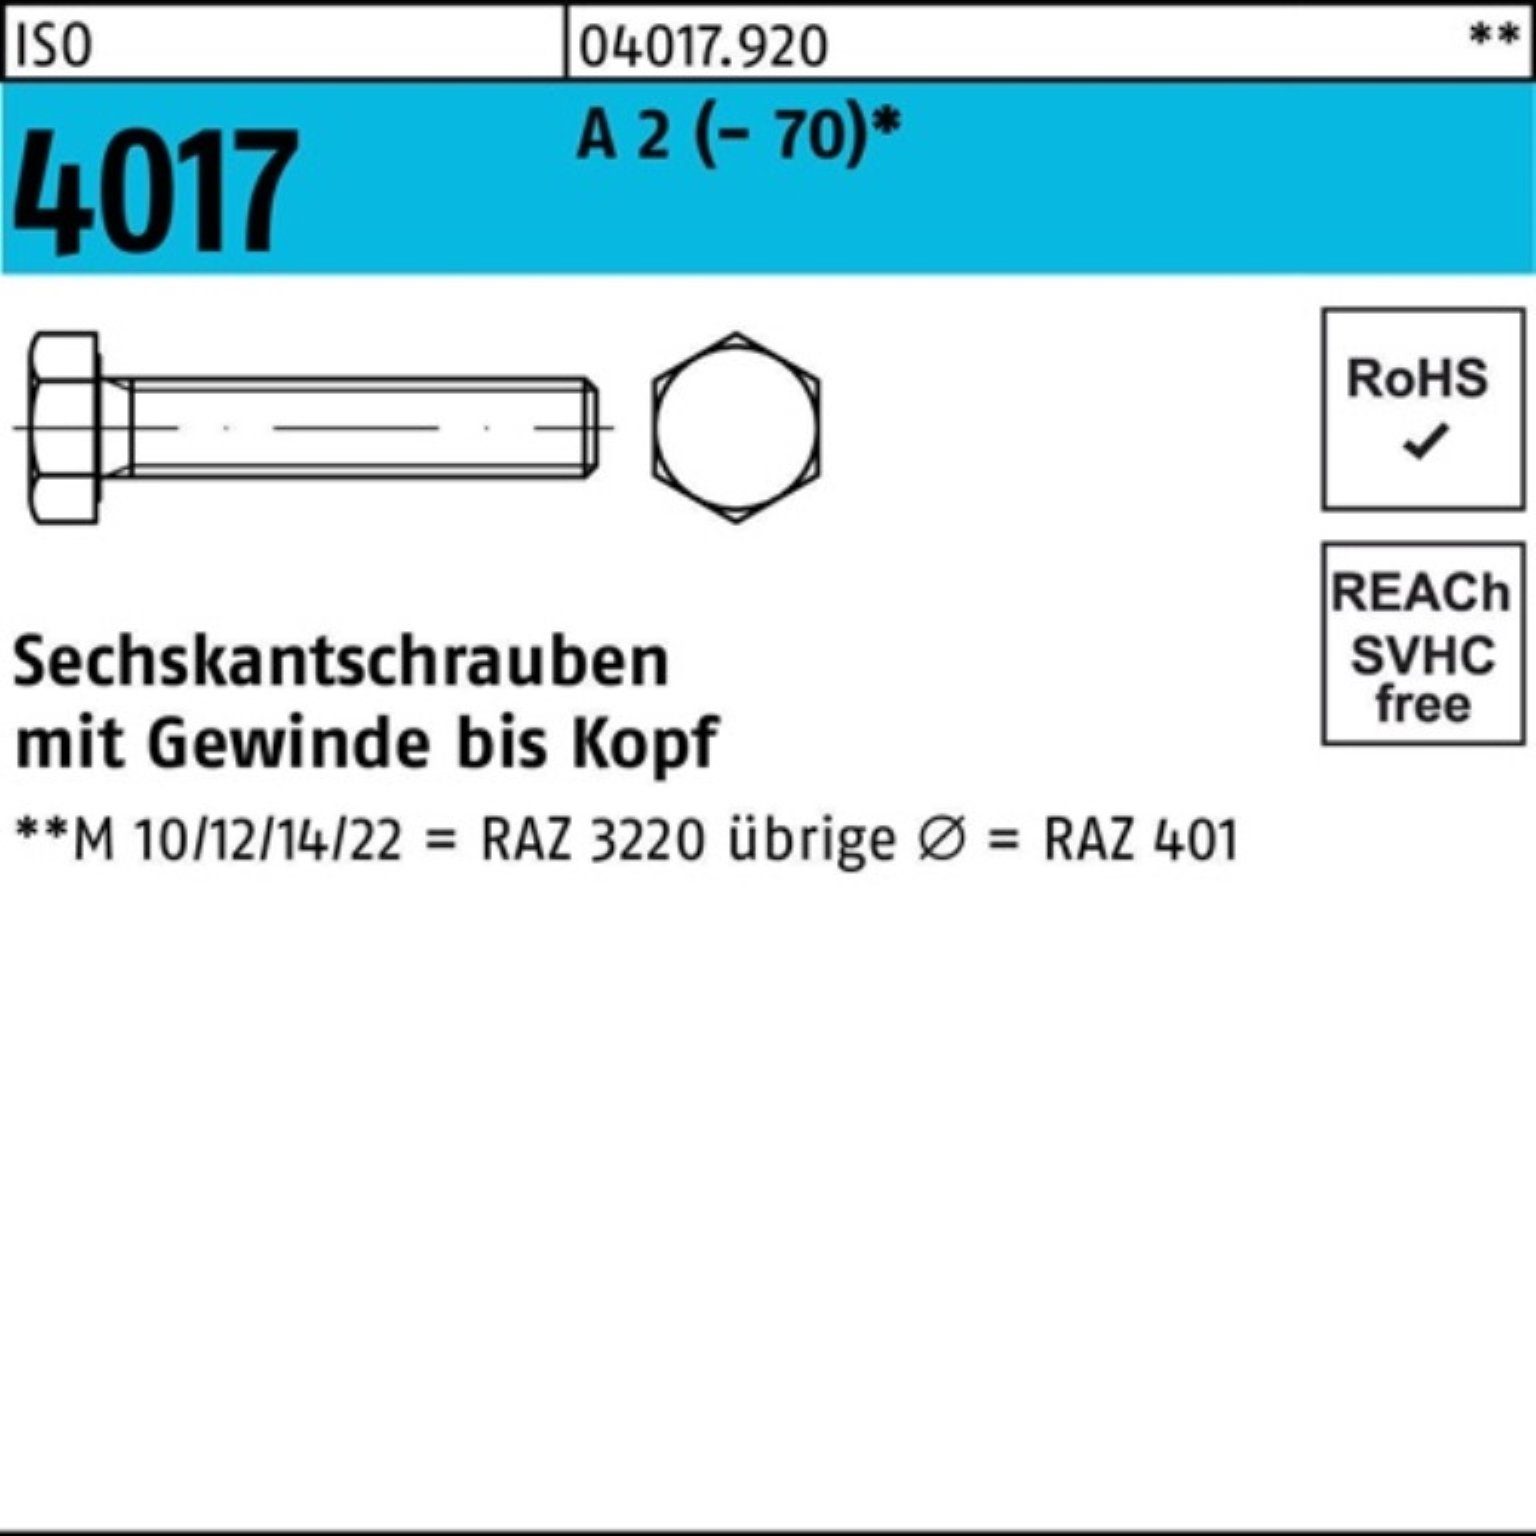 Bufab Sechskantschraube 100er Pack Sechskantschraube ISO 4017 VG M12x 90 A 2 (70) 50 Stück